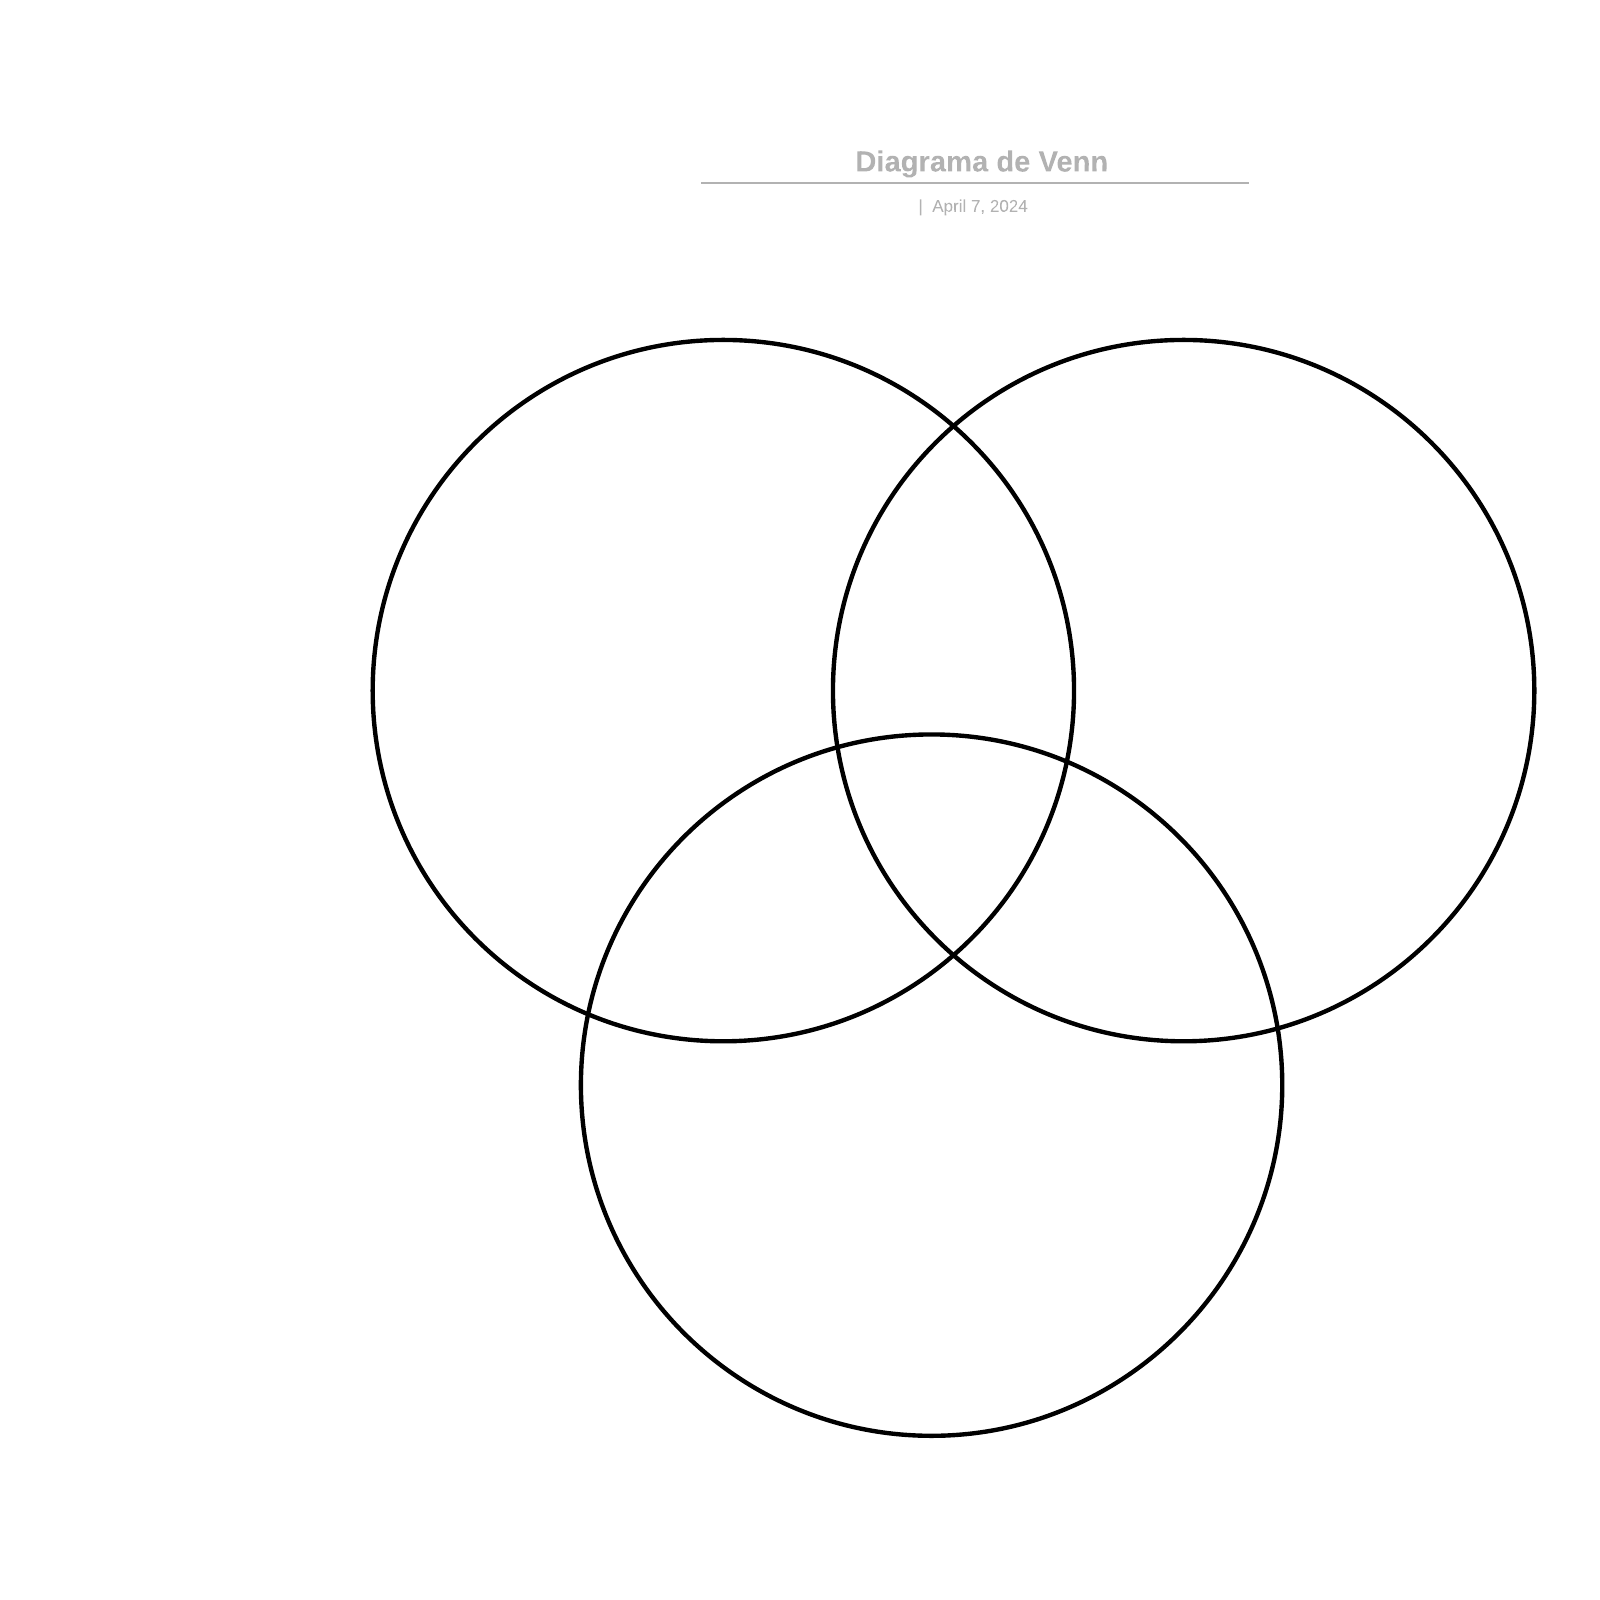 Diagrama de Venn example